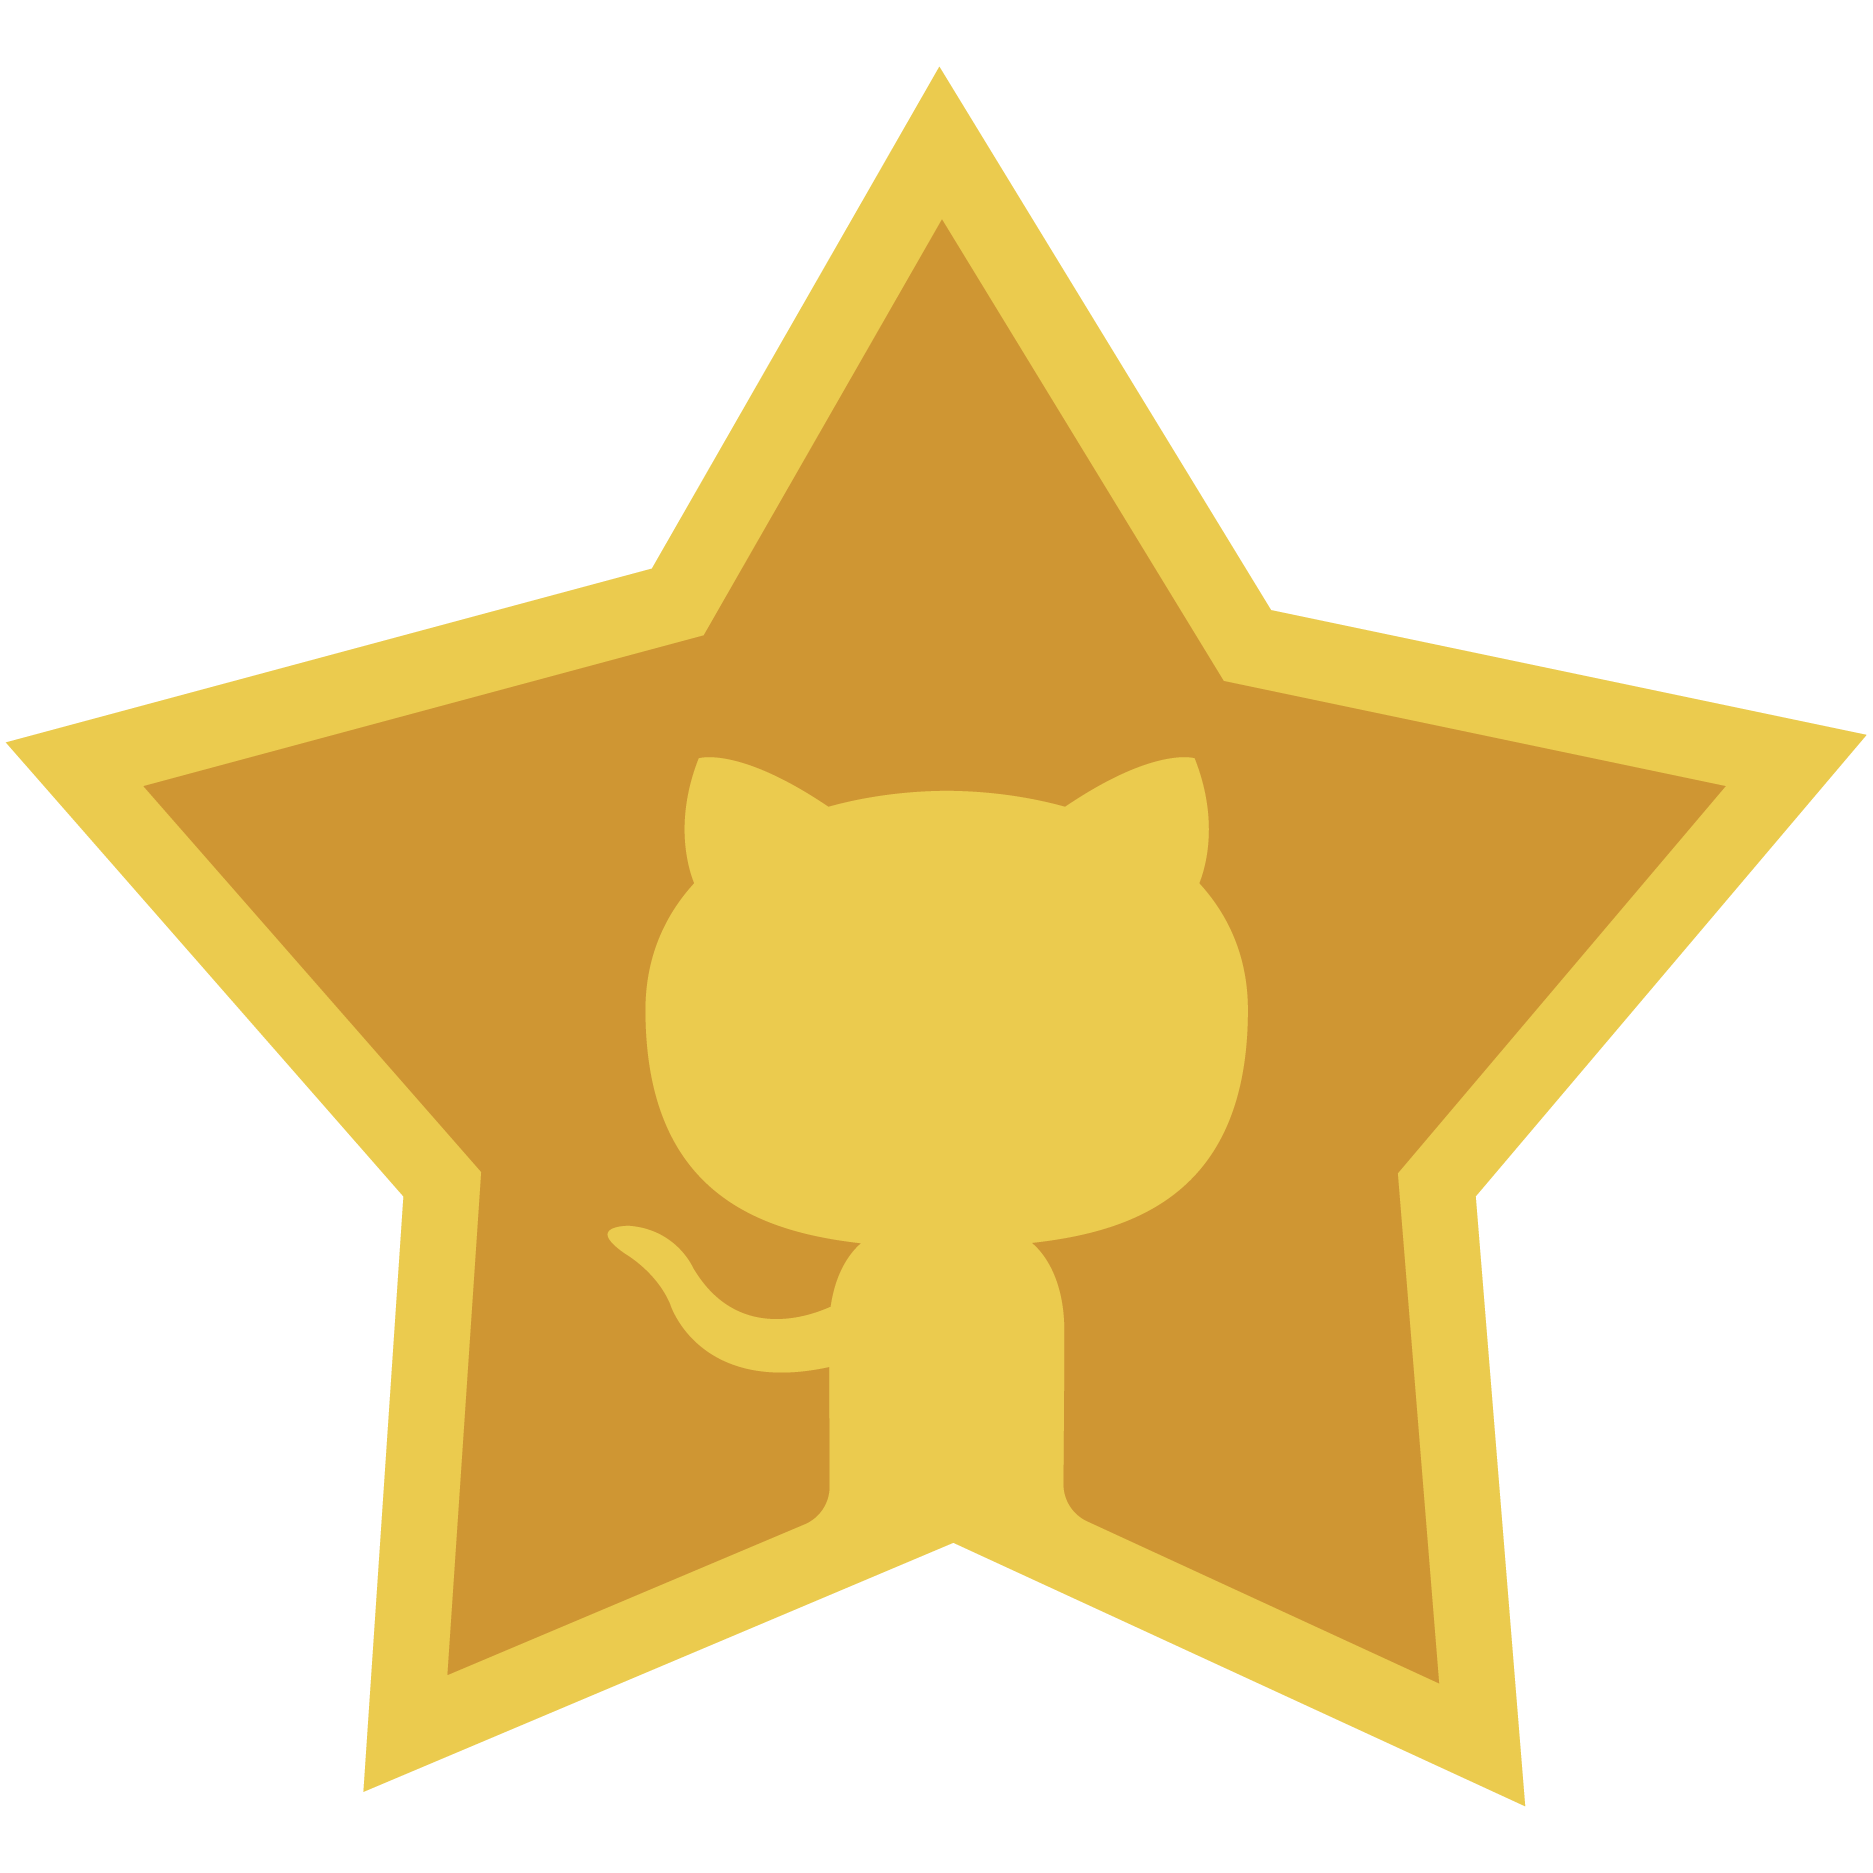 GitHub star